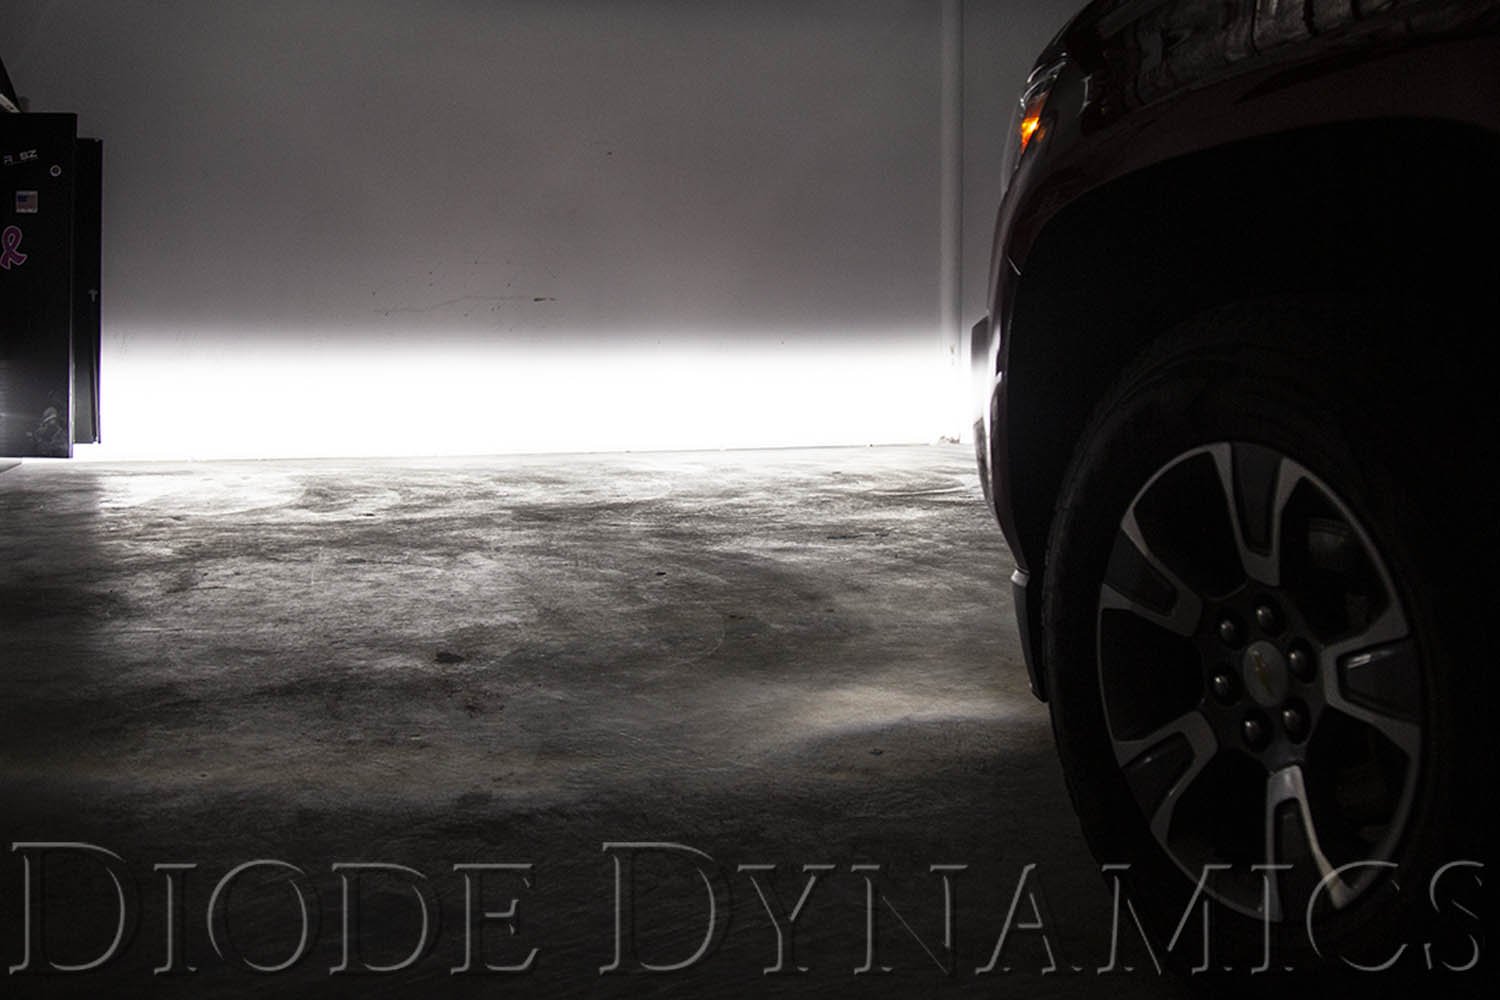 SS3 LED Fog Light Kit for 2007-2014 GMC Yukon Diode Dynamics-